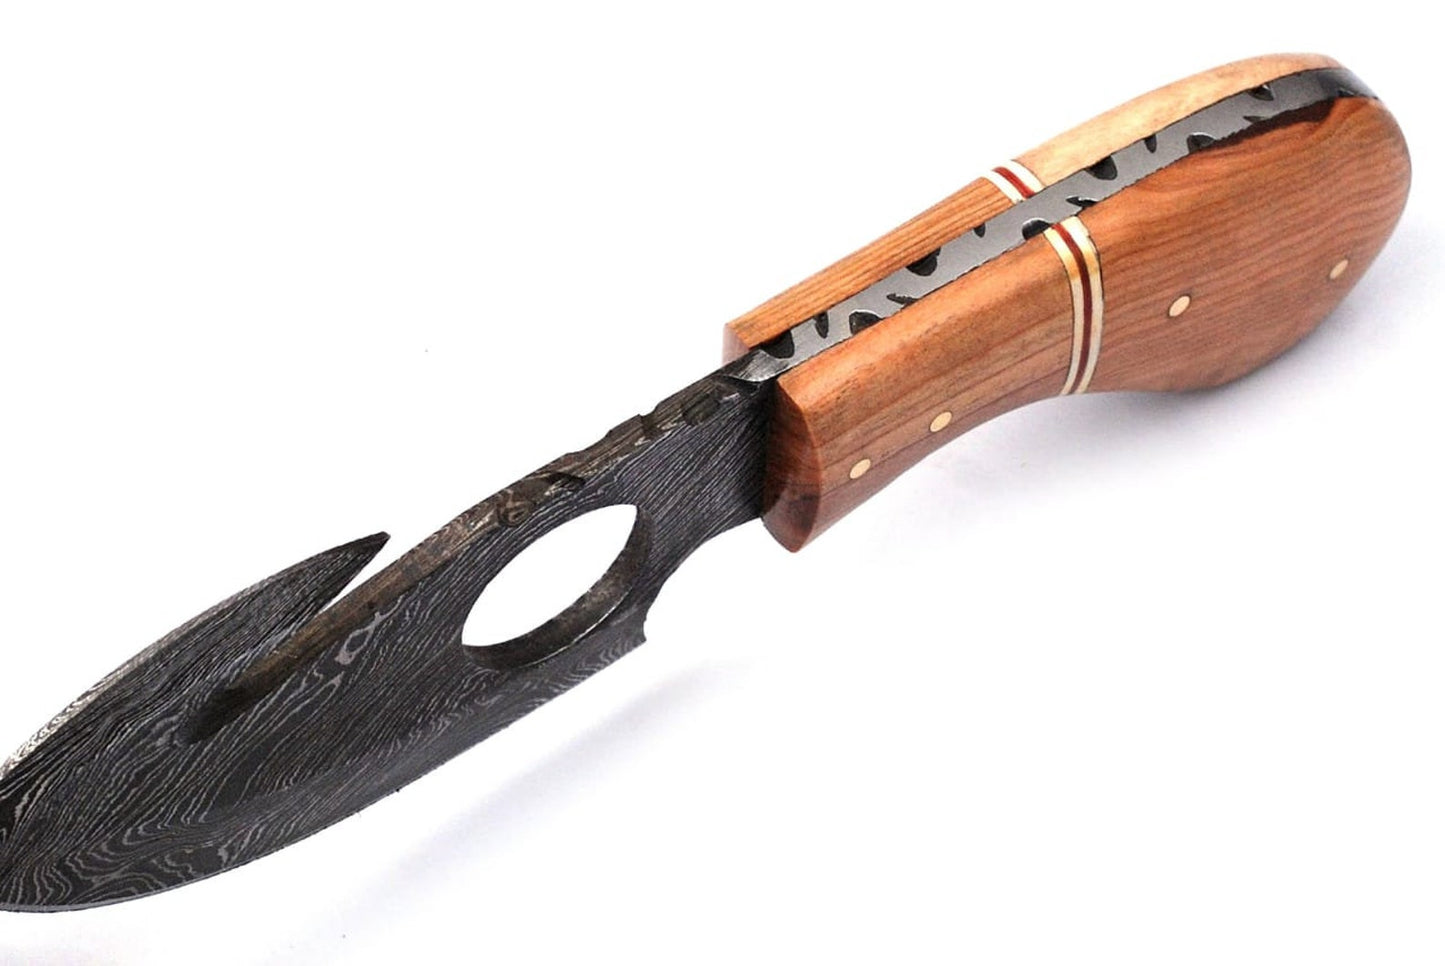 Handmade Damascus Steel Sharp Edge Blade Finger Hole Gut Hook / Hunting / Skinner Knife